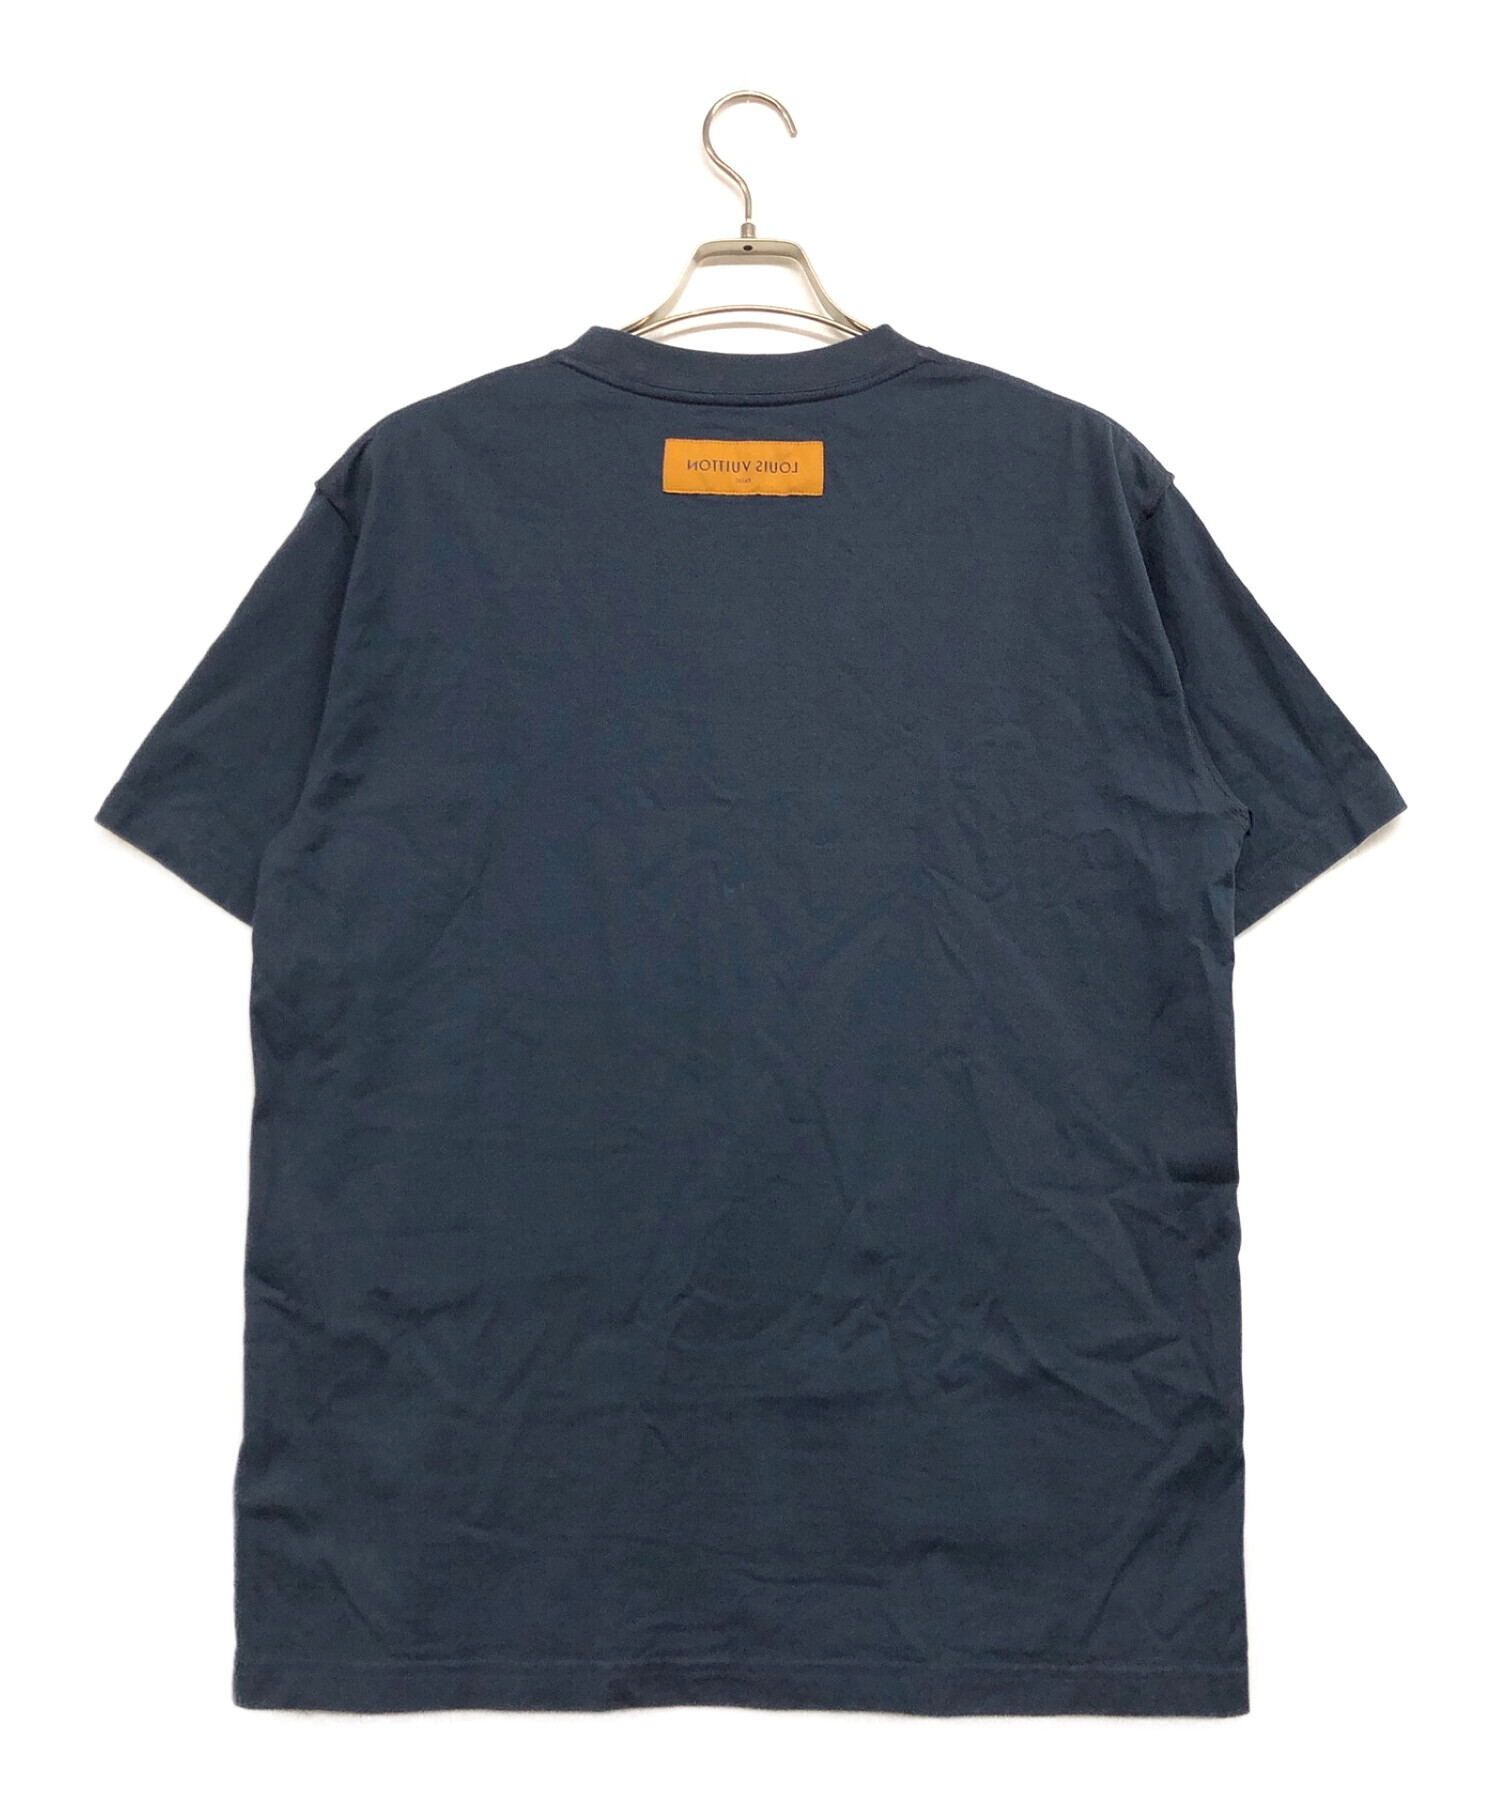 55cmルイヴィトン LVロゴ エンボス ポケット Tシャツ 半袖シャツ メンズ 即完売